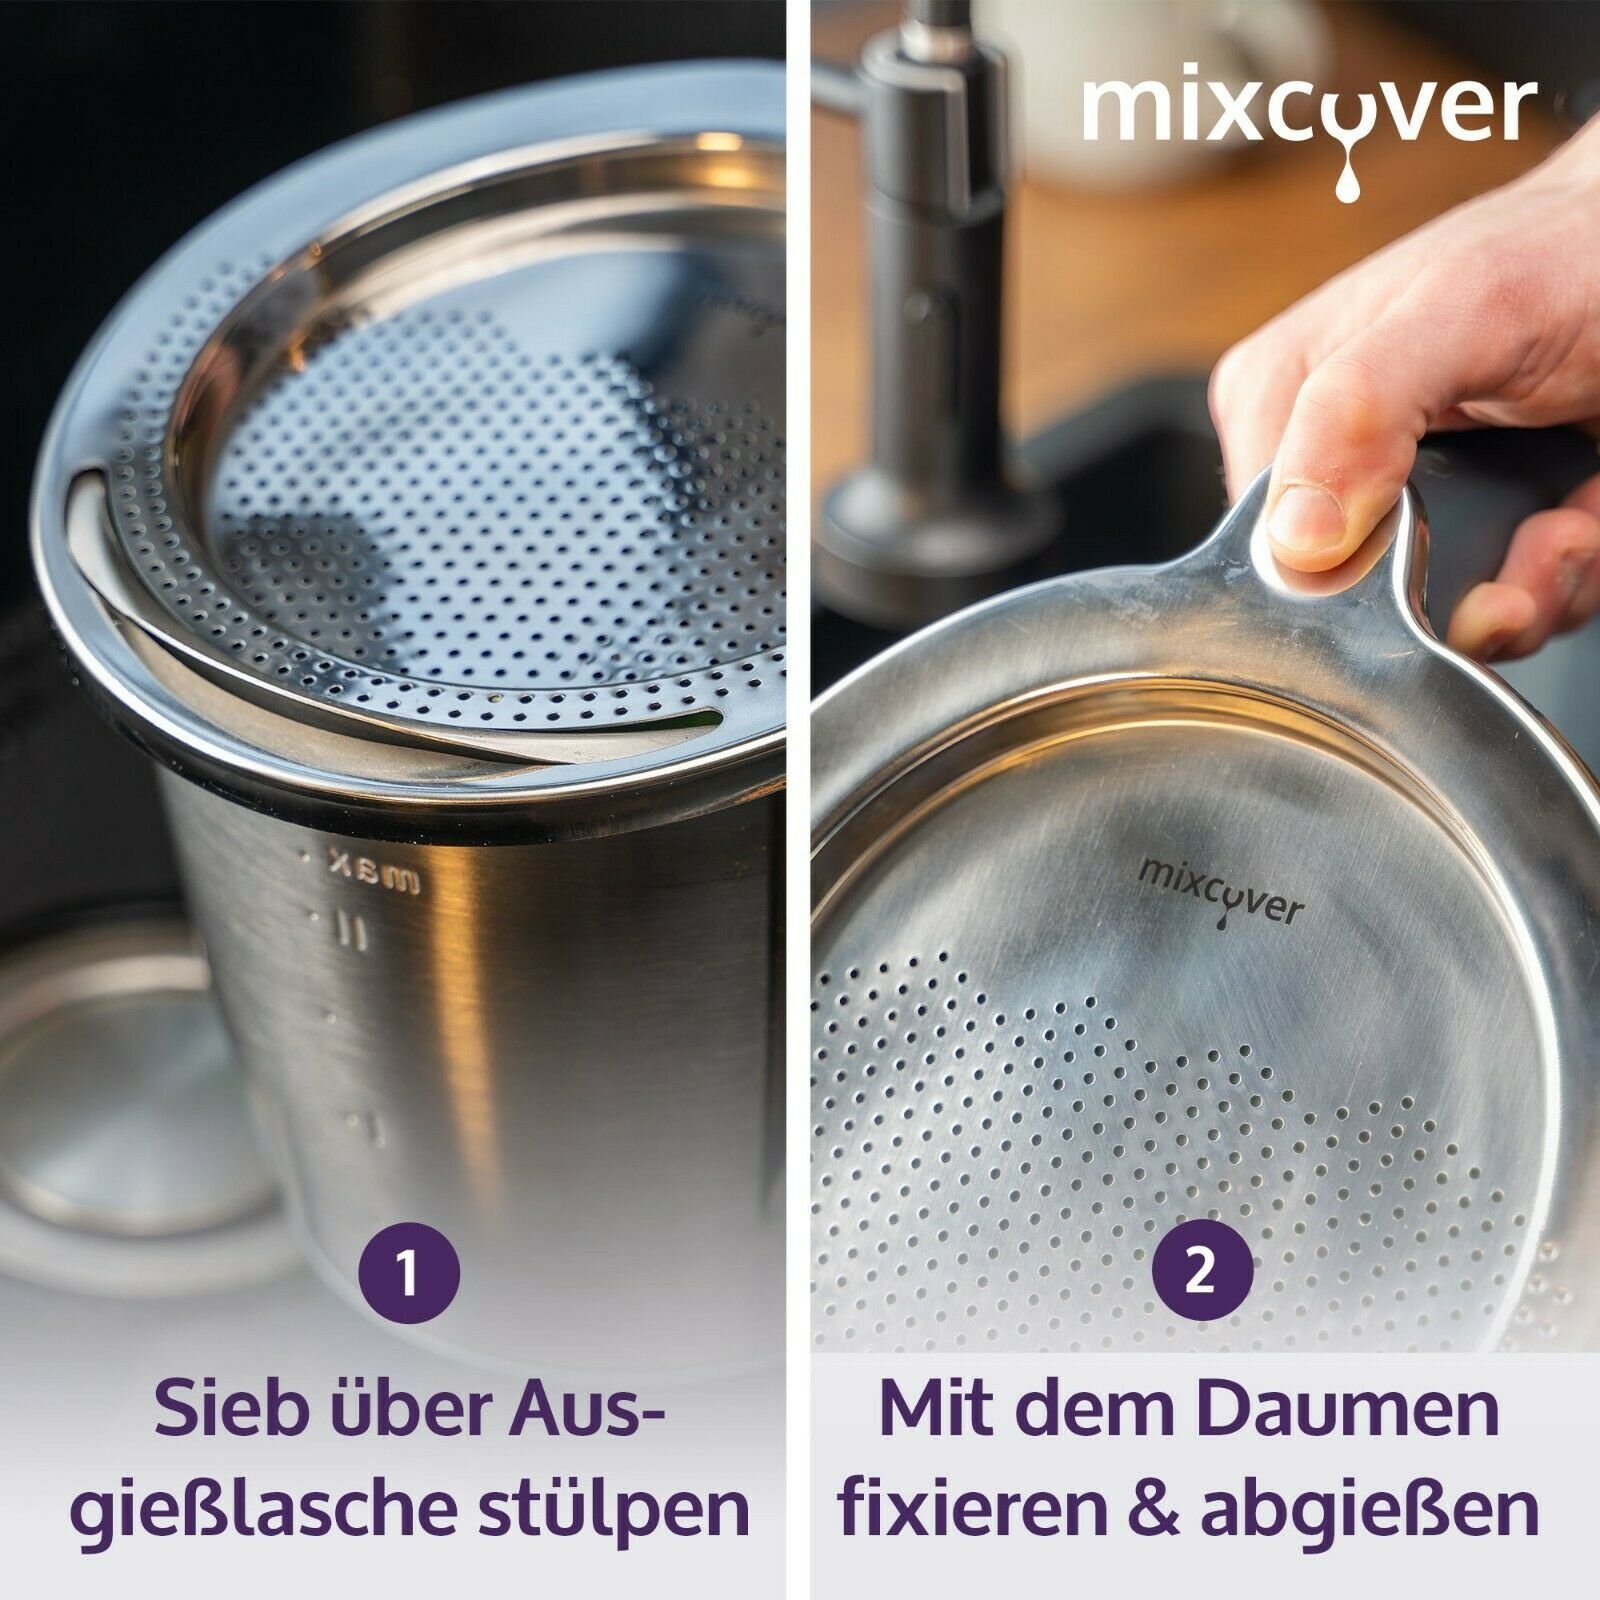 TM5, abgießen TM6 Küchenmaschinen-Adapter Nudeln Mixcover Thermomix uvm. mixcover und Edelstahl Sieb Abgieß-Hilfe